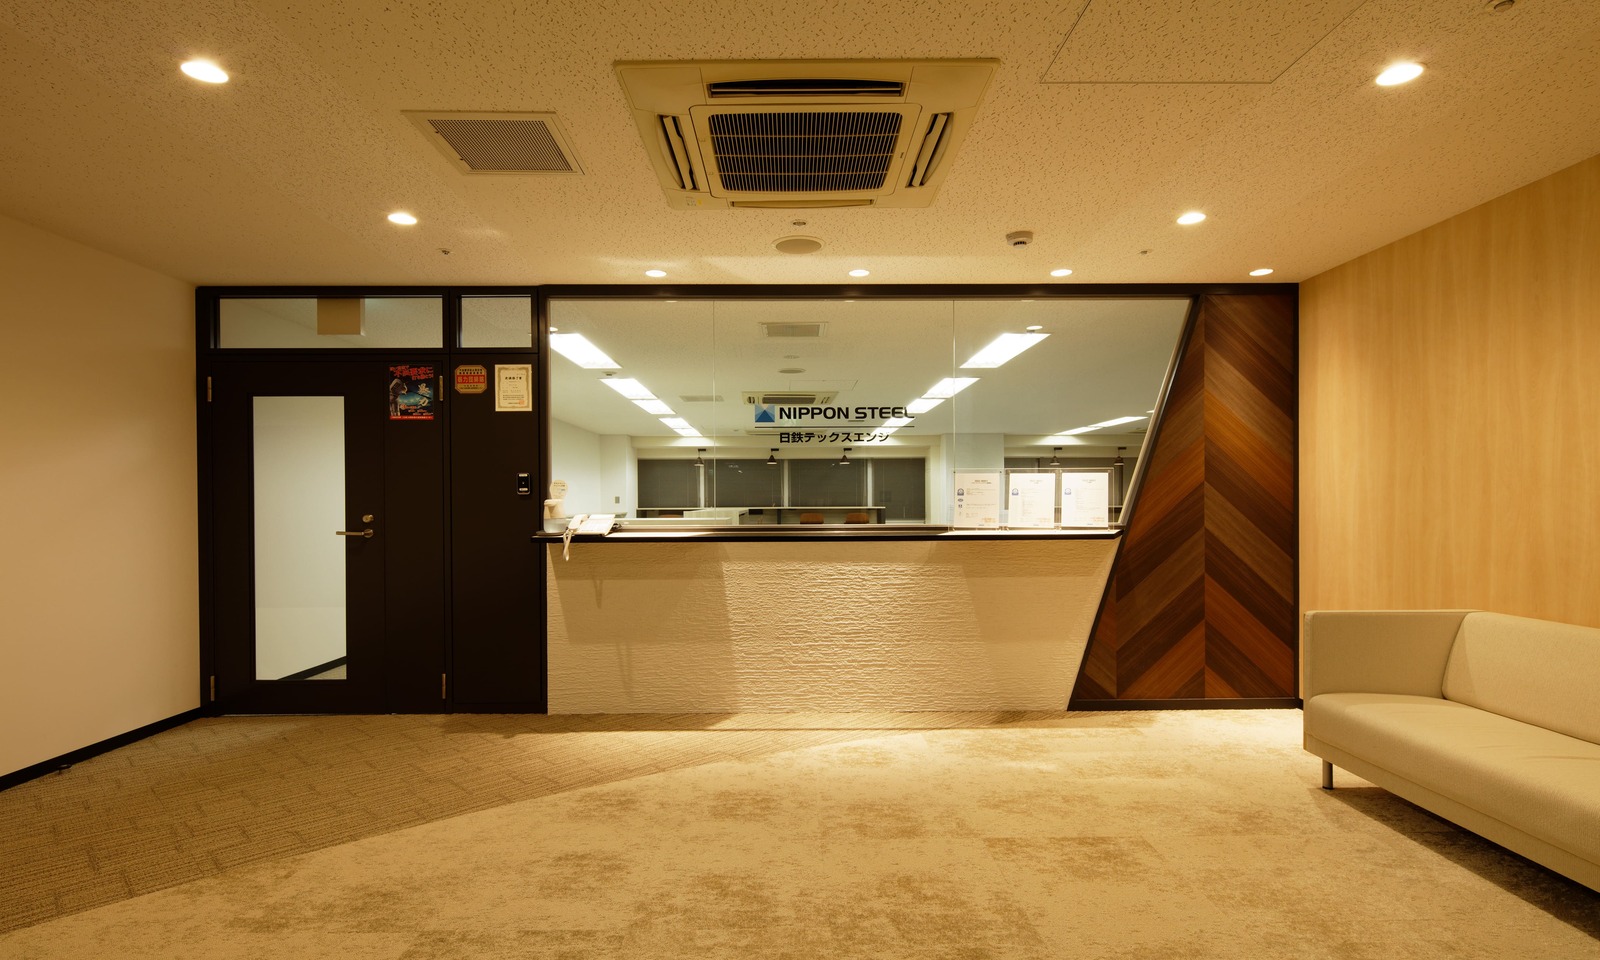 ナチュラルオフィスの施工事例として、日鉄テックスエンジ株式会社様（大阪事務所）を施工事例集に追加いたしました。